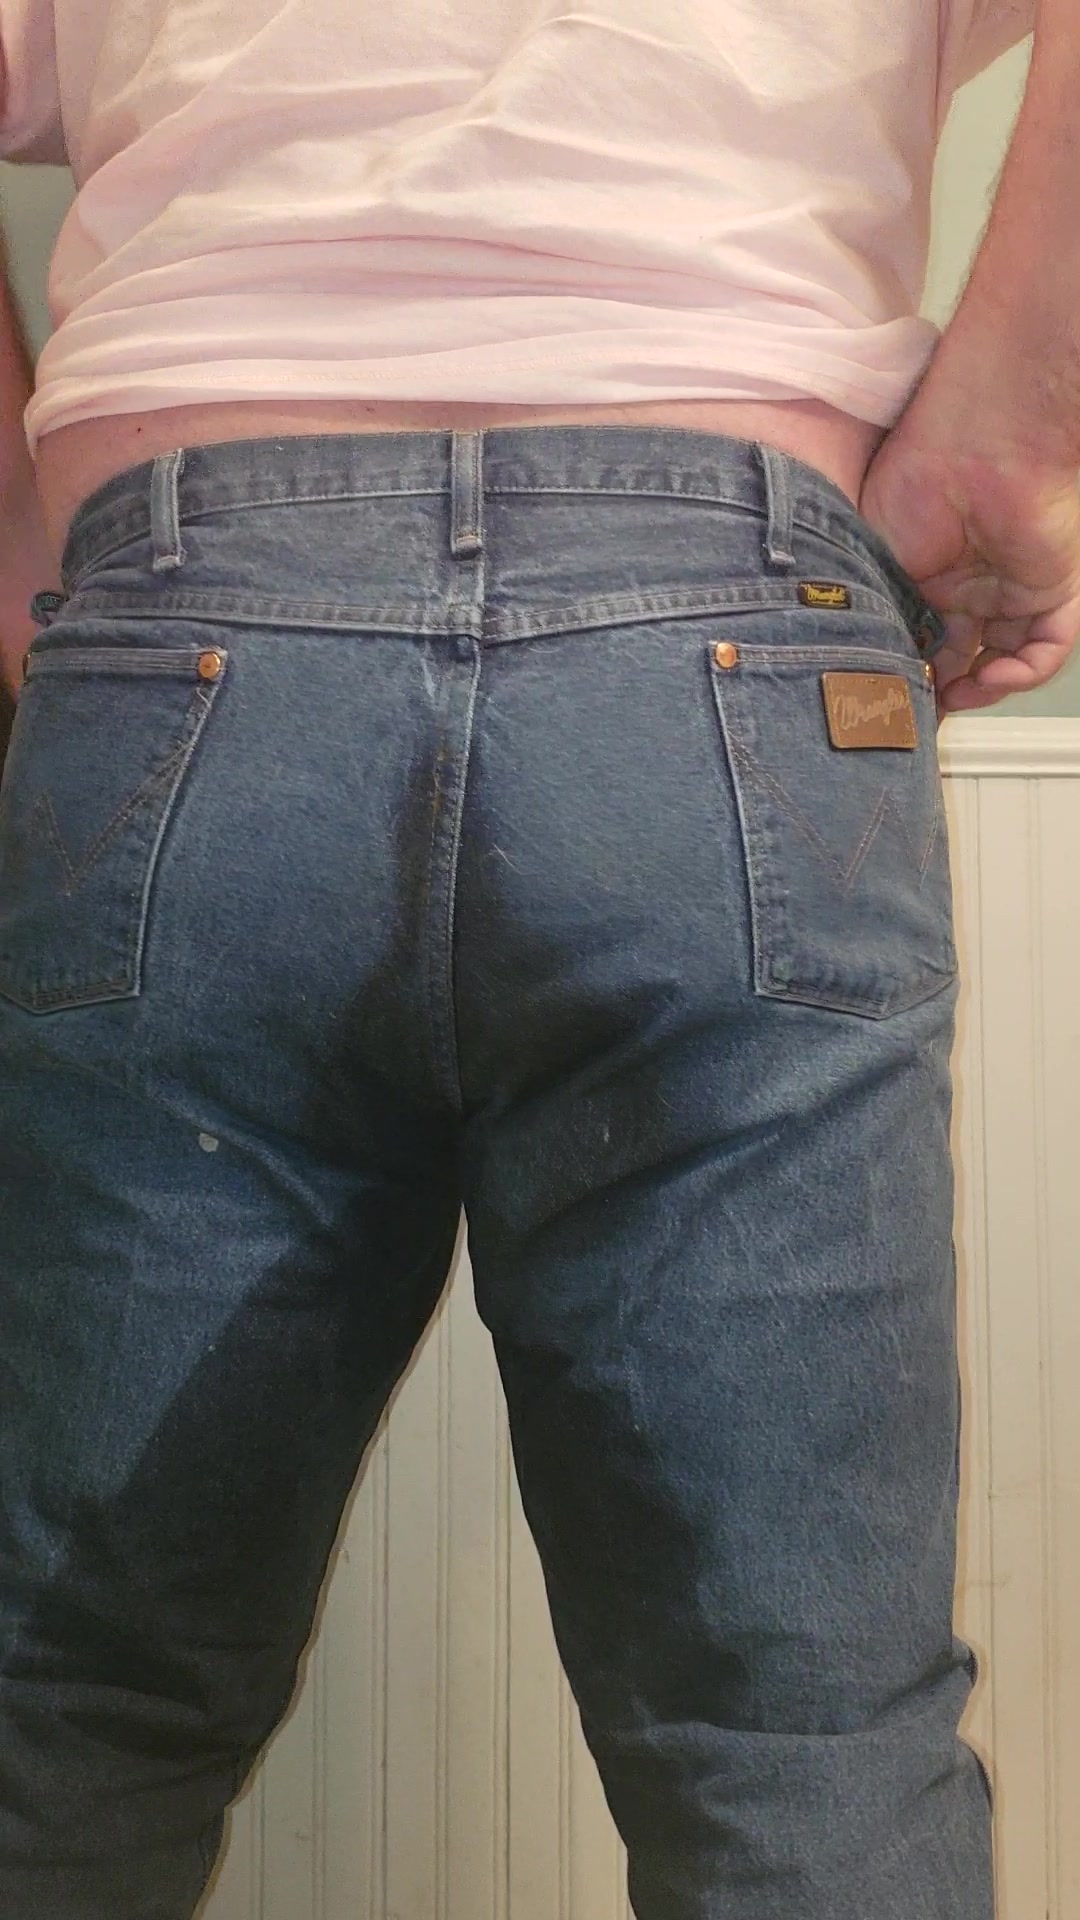 Pants poop - video 9